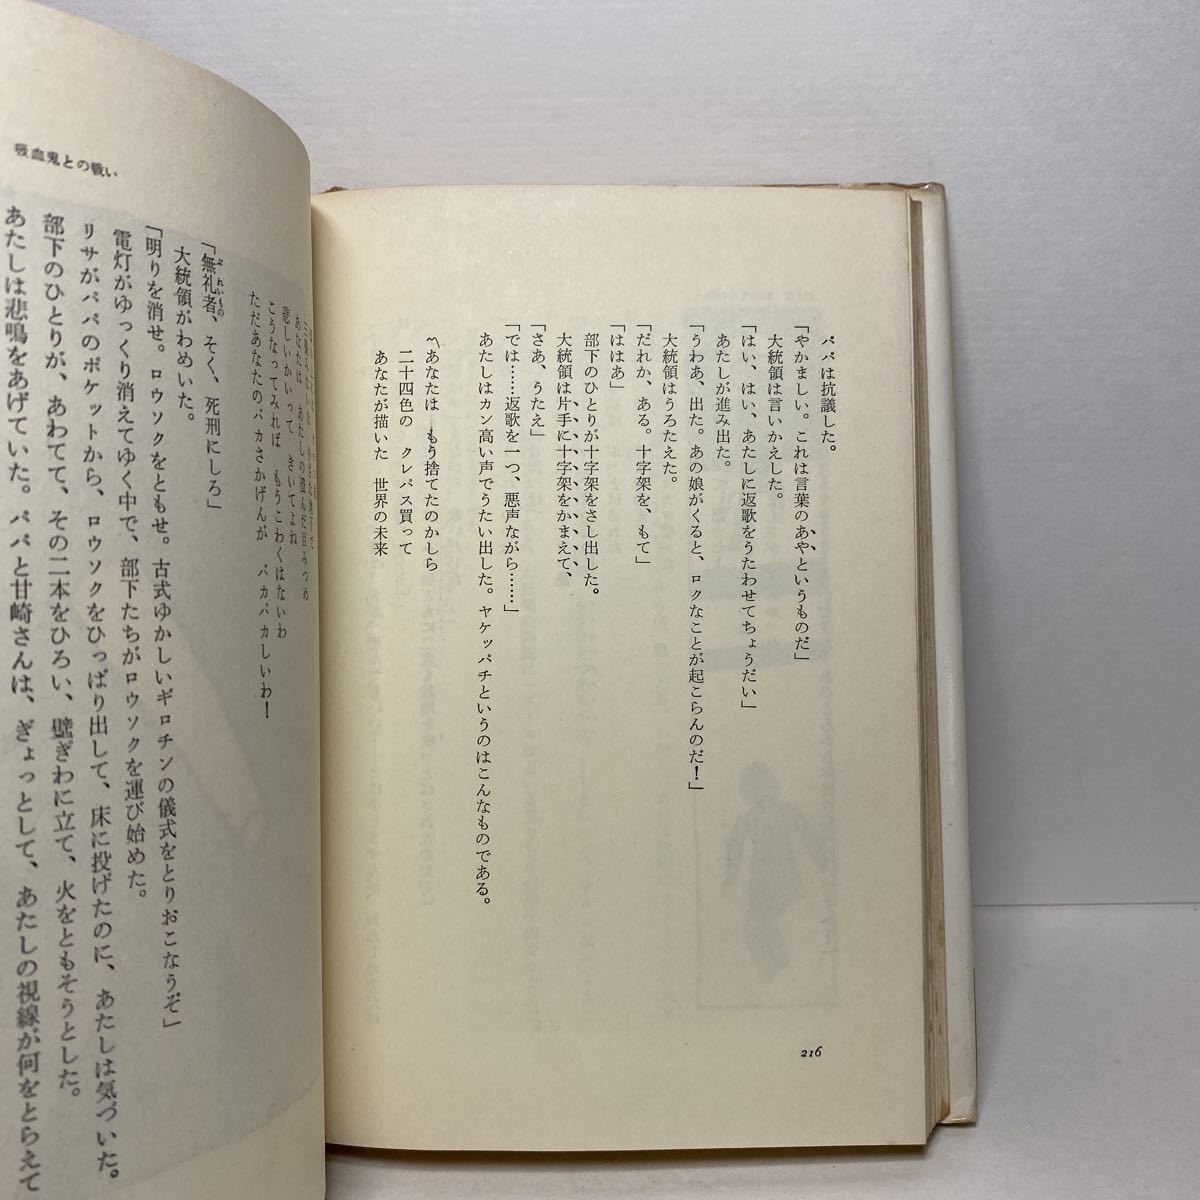 a4/oyoyo замок. секрет Kobayashi Nobuhiko . документ фирма 1974 год первая версия монография стоимость доставки 180 иен ( Yu-Mail )